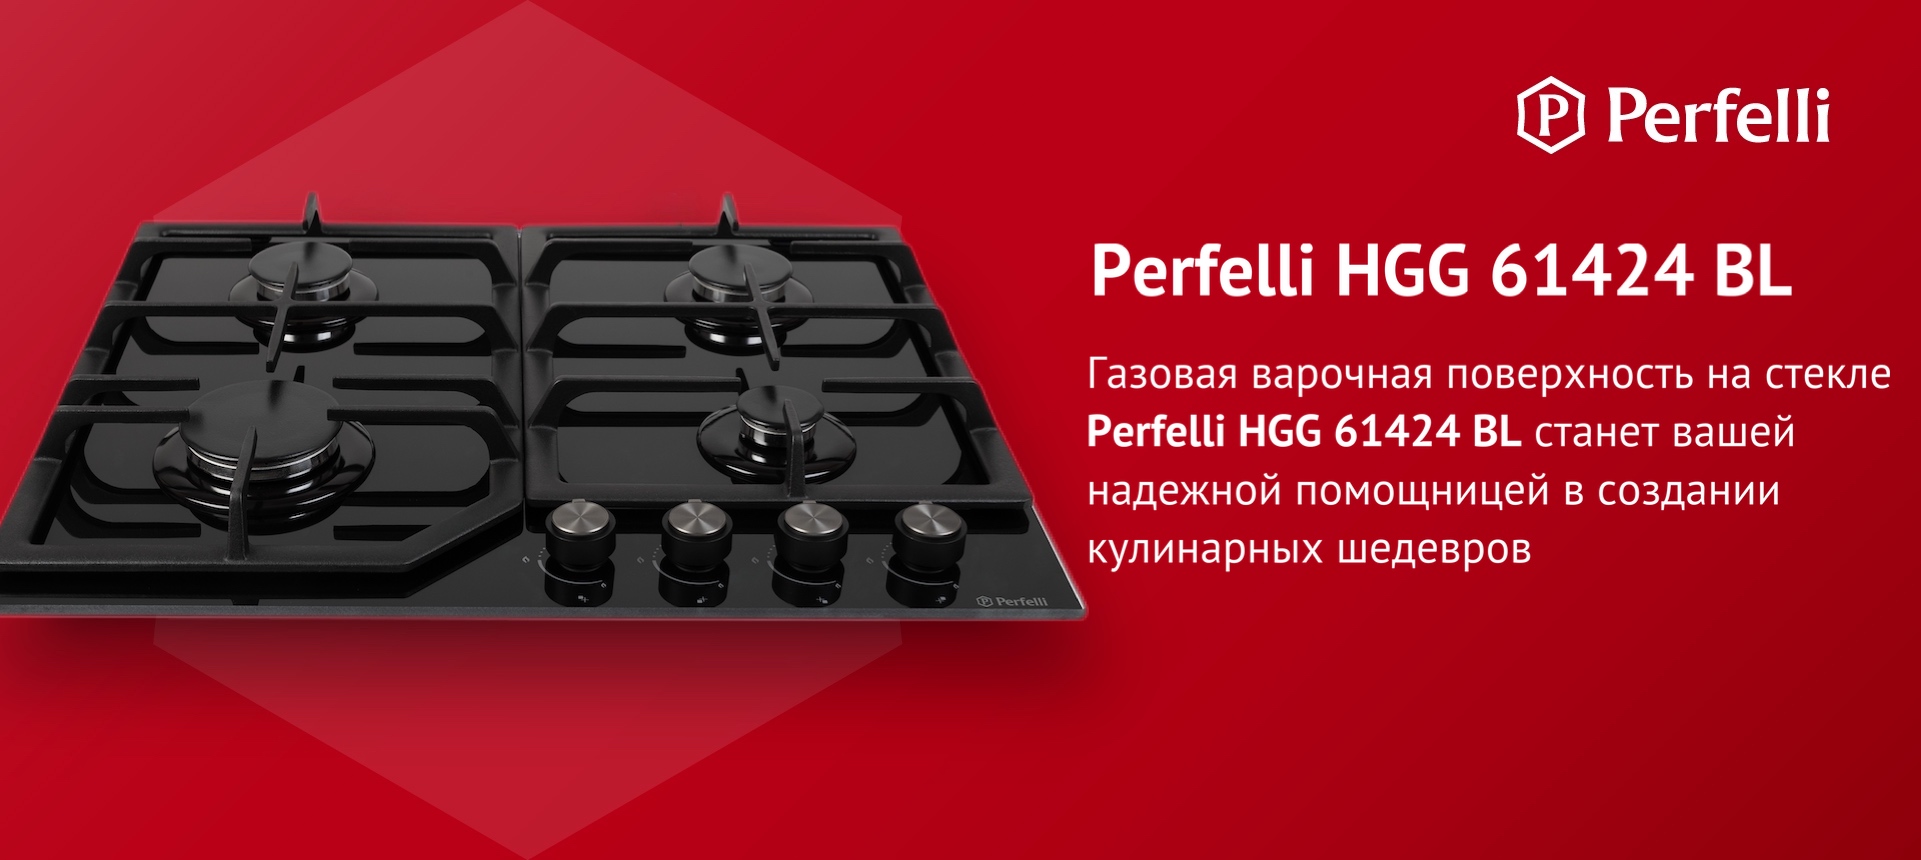 Газовая варочная поверхность на стекле Perfelli HGG 61424 BL станет вашей надежной помощницей в создании кулинарных шедевров